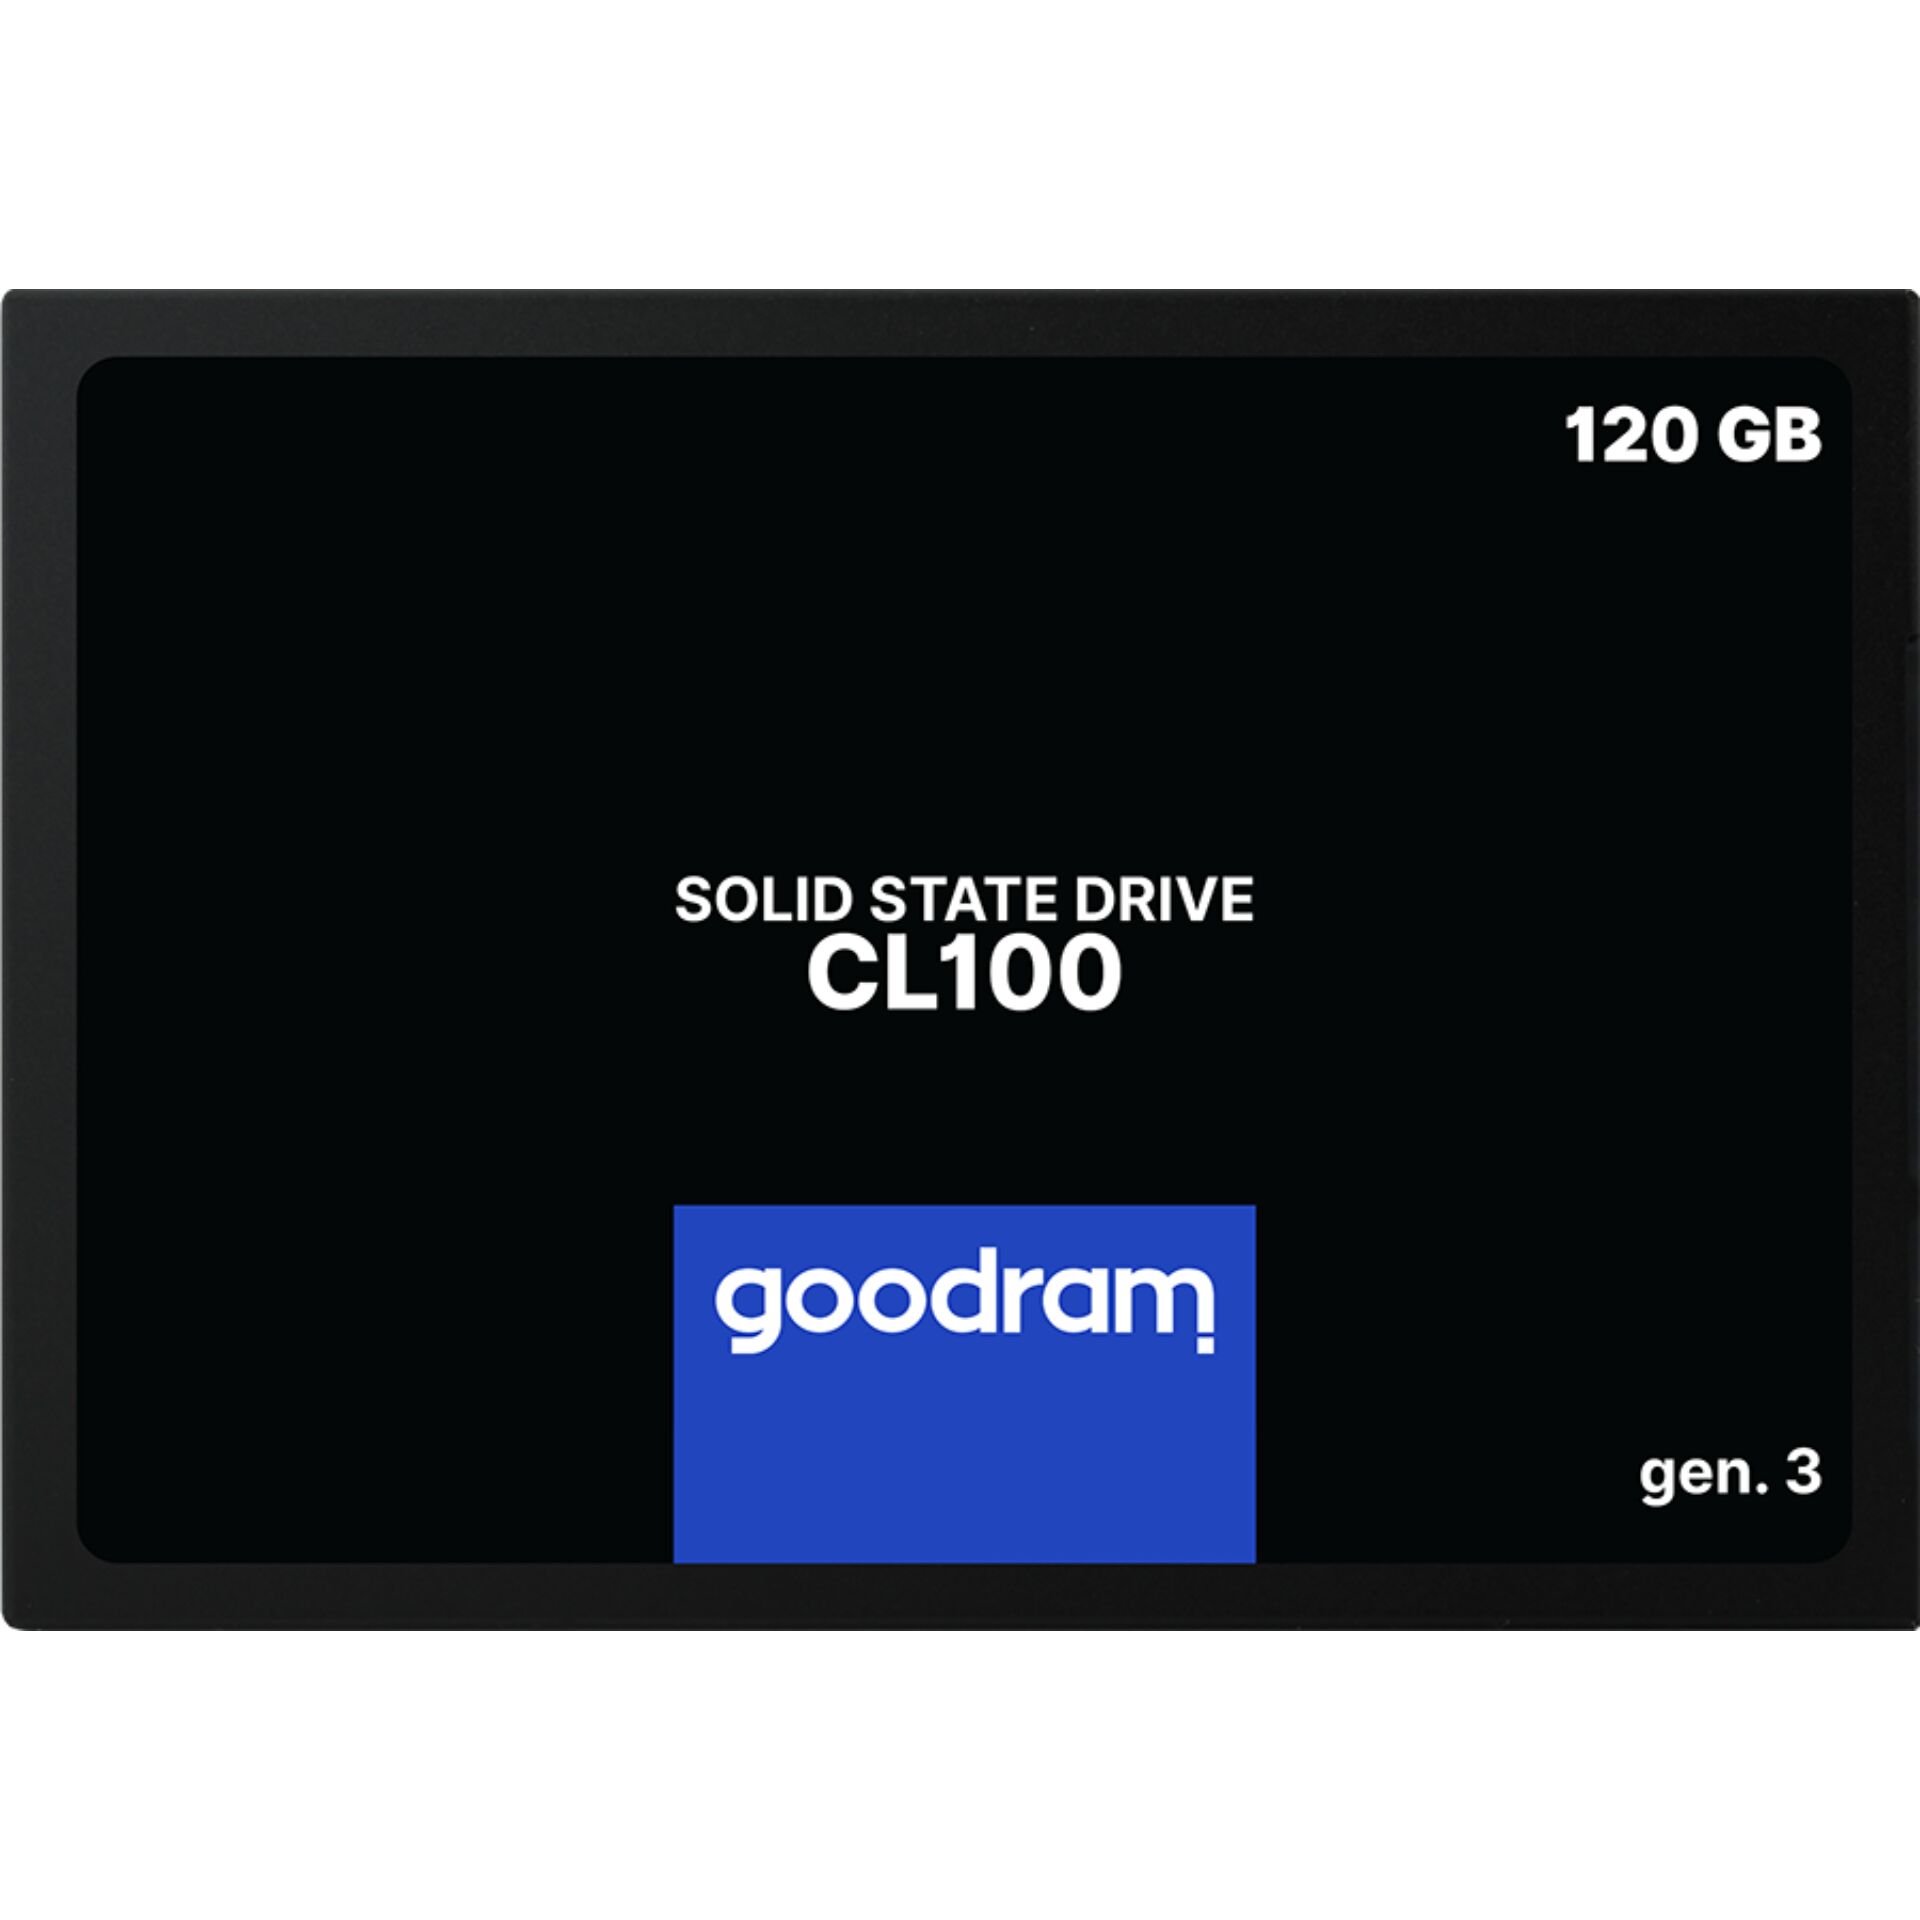 120 GB SSD goodram essential CL100 gen.3, SATA 6Gb/s, lesen: 500MB/s, schreiben: 360MB/s